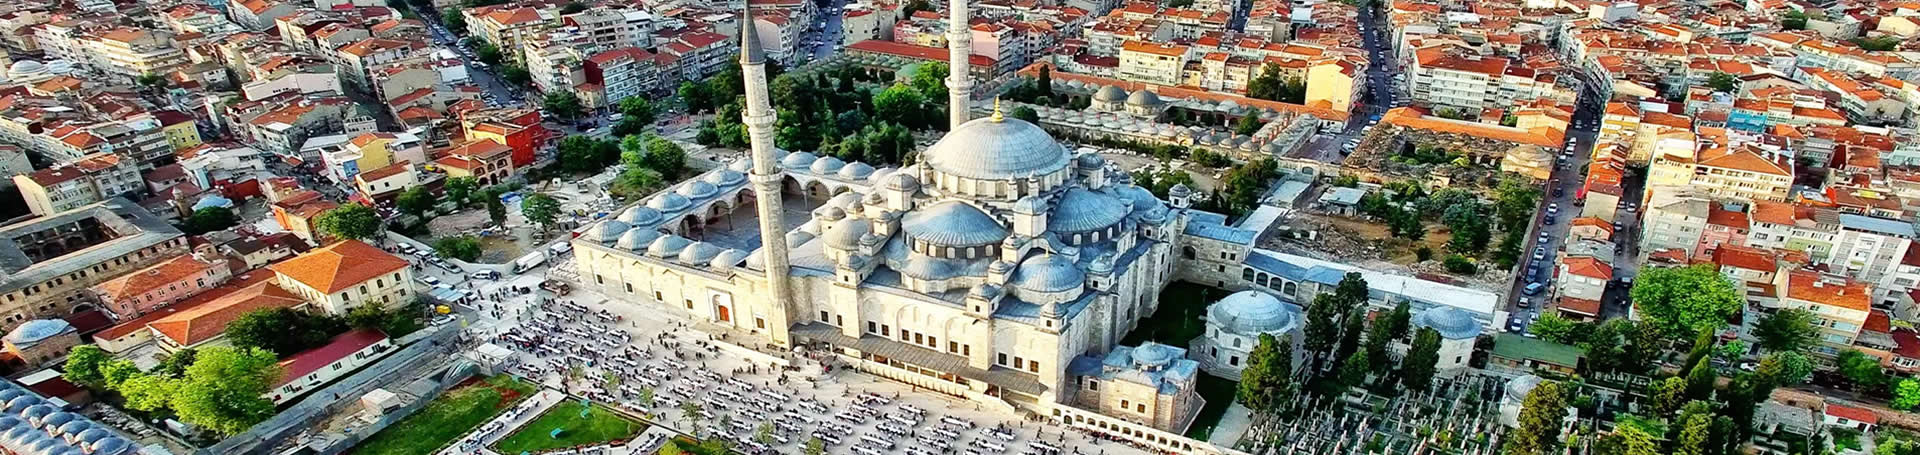 آشنایی با مسجد فاتح استانبول